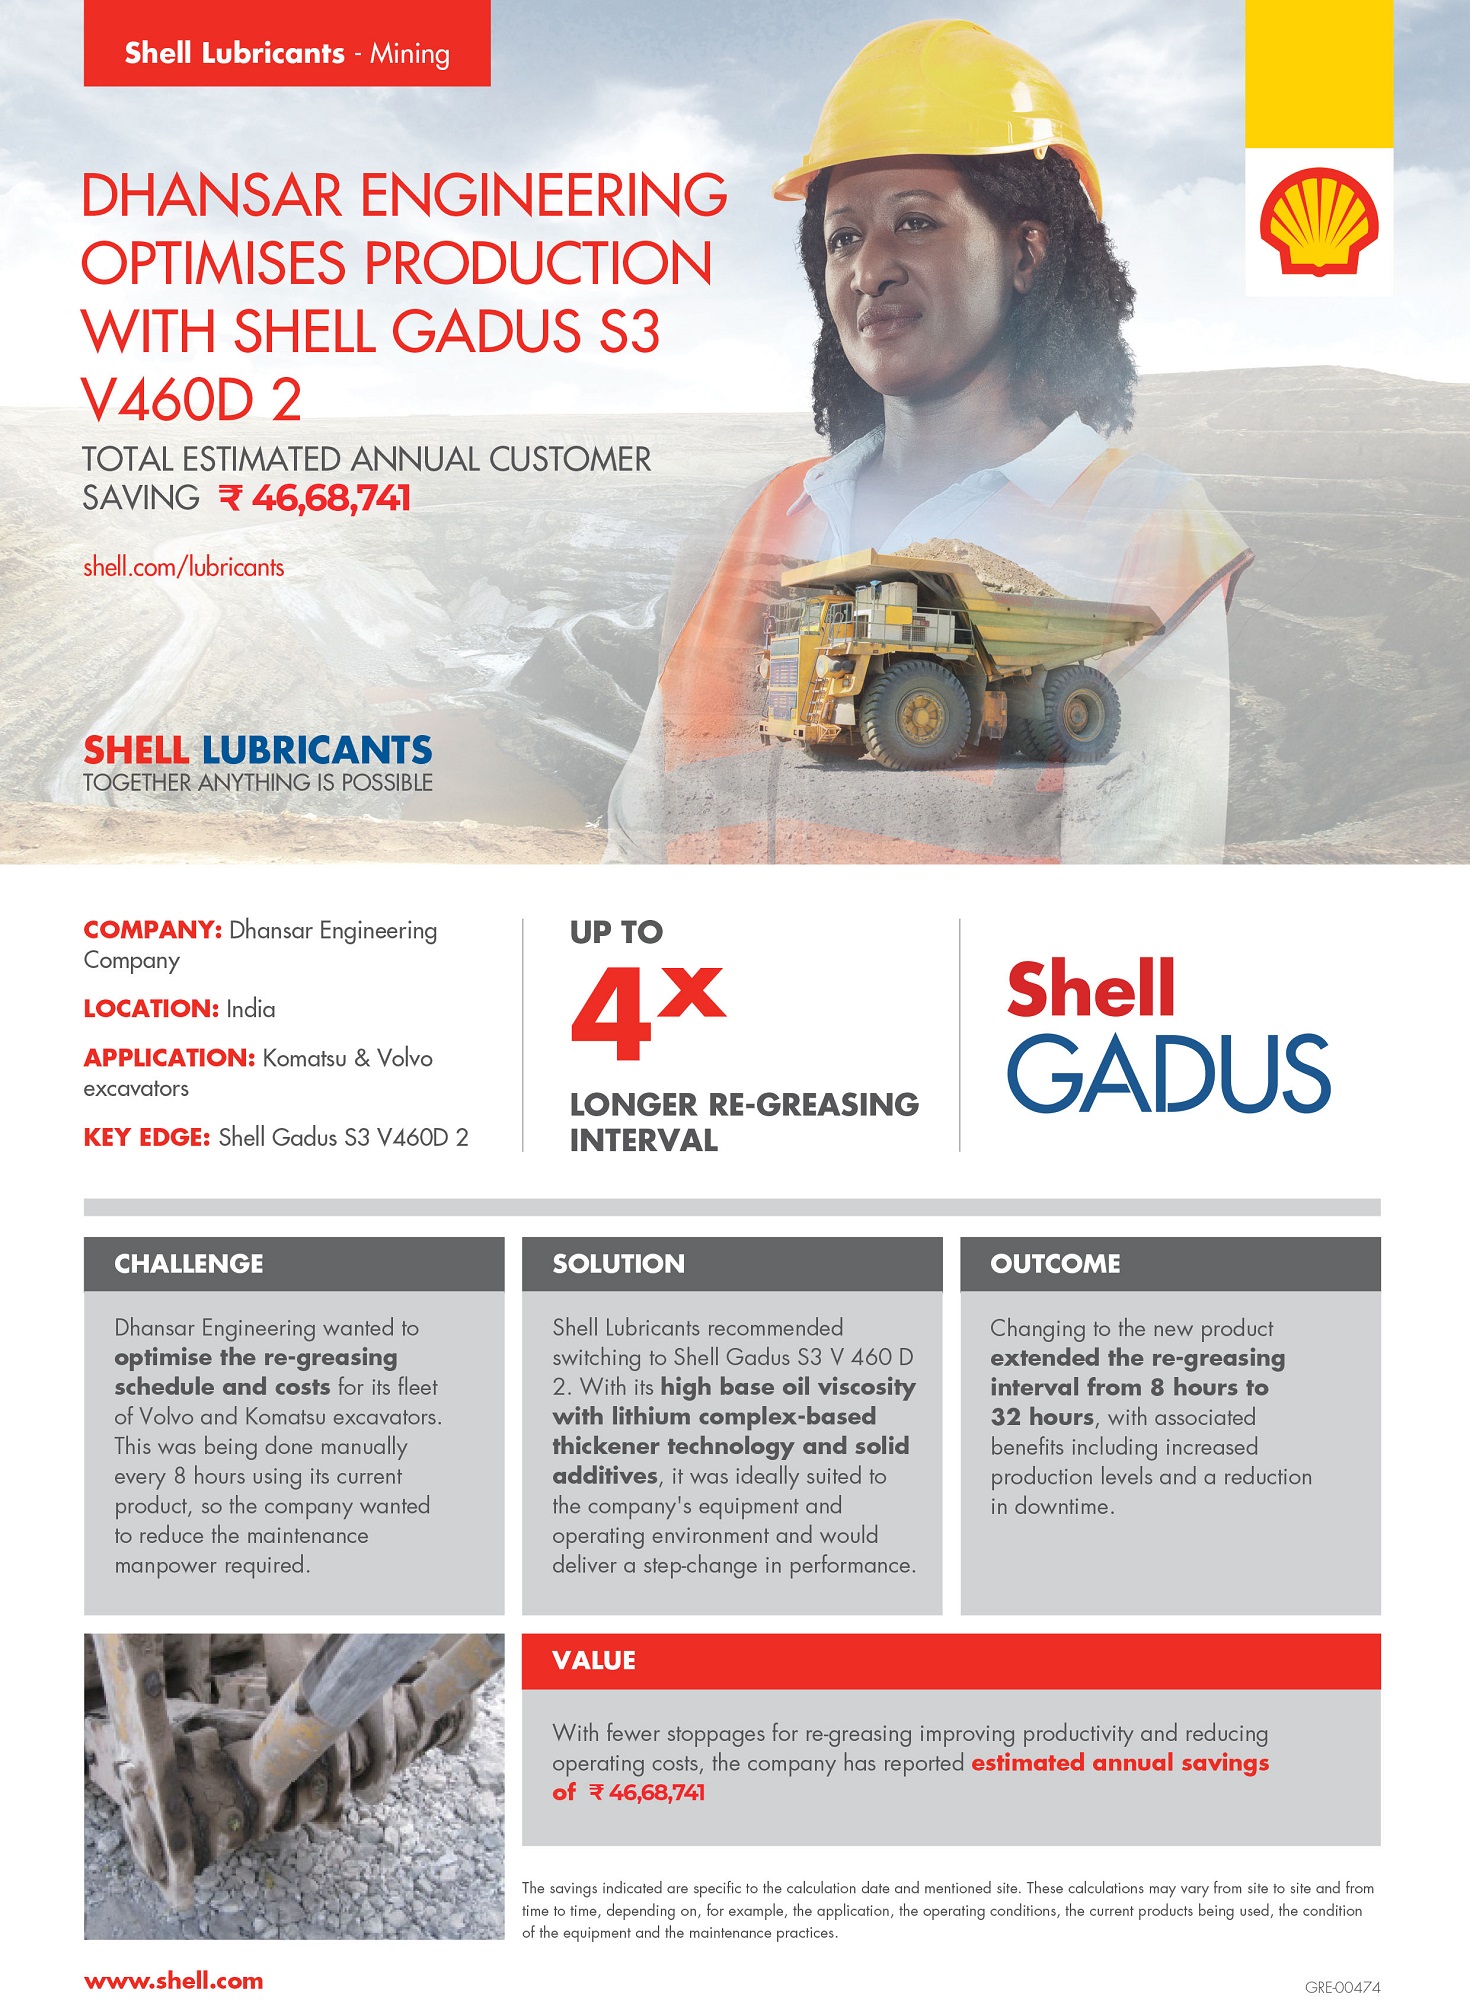 Shell Gadus S3 V460D 2 (GRE-00474-5) Mining copy